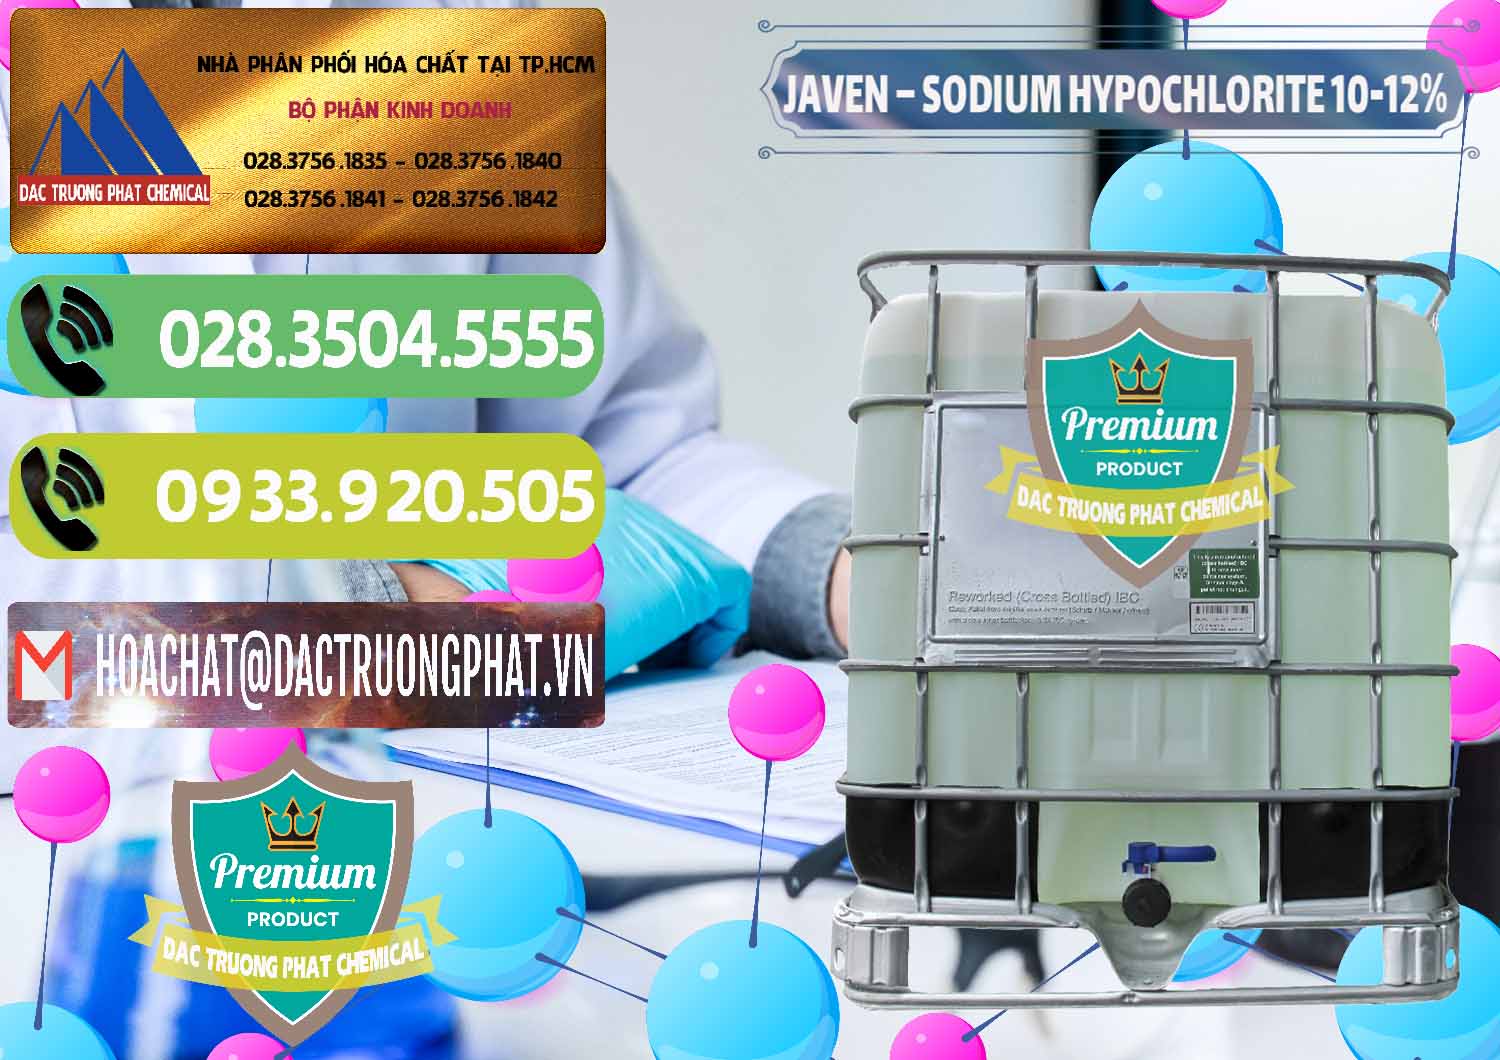 Cty kinh doanh _ cung cấp Javen - Sodium Hypochlorite 10-12% Việt Nam - 0188 - Chuyên bán và phân phối hóa chất tại TP.HCM - hoachatmientay.vn